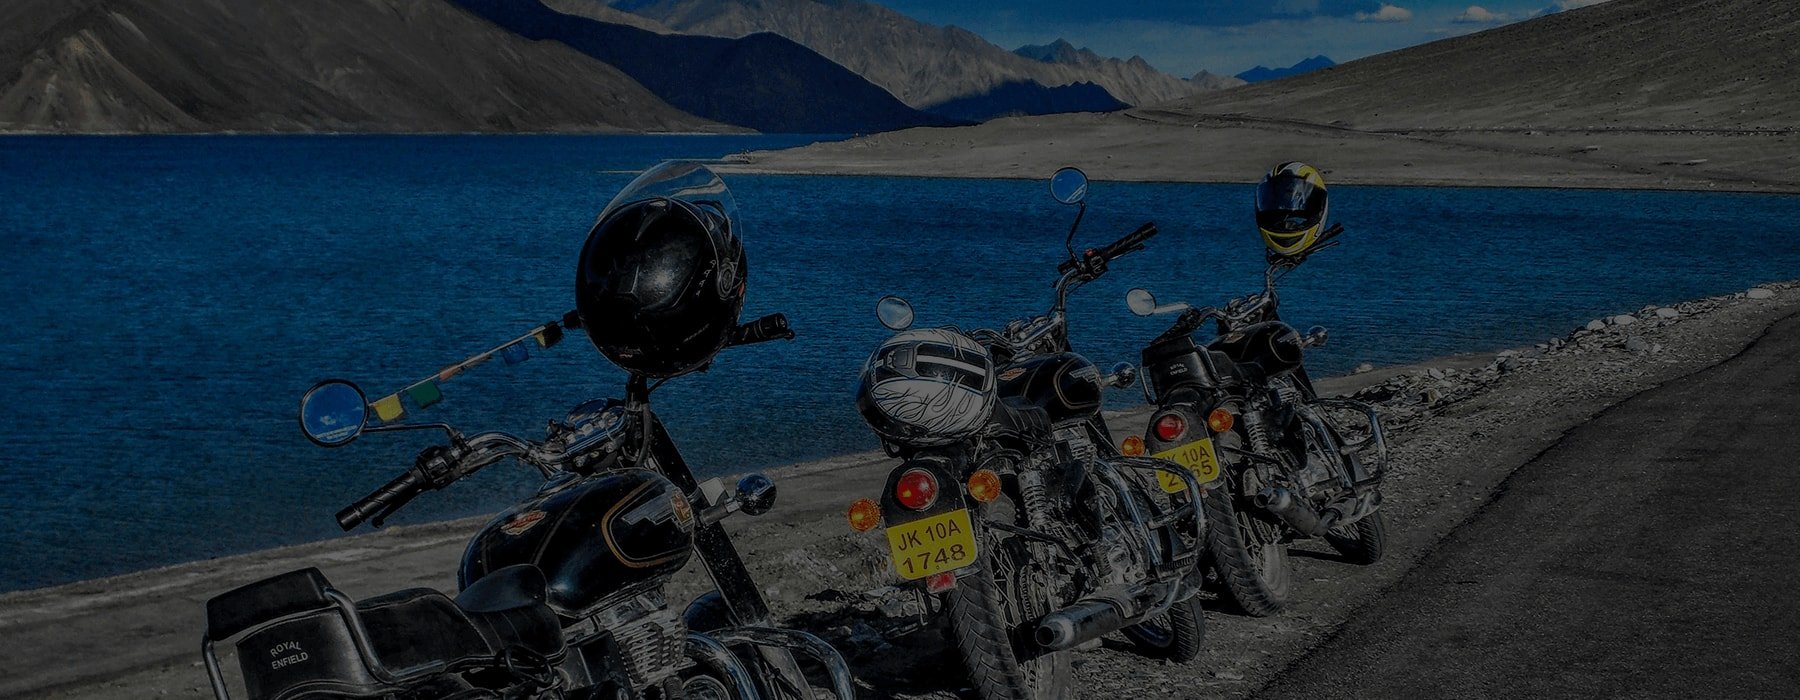 Ladakh on Motorcycle